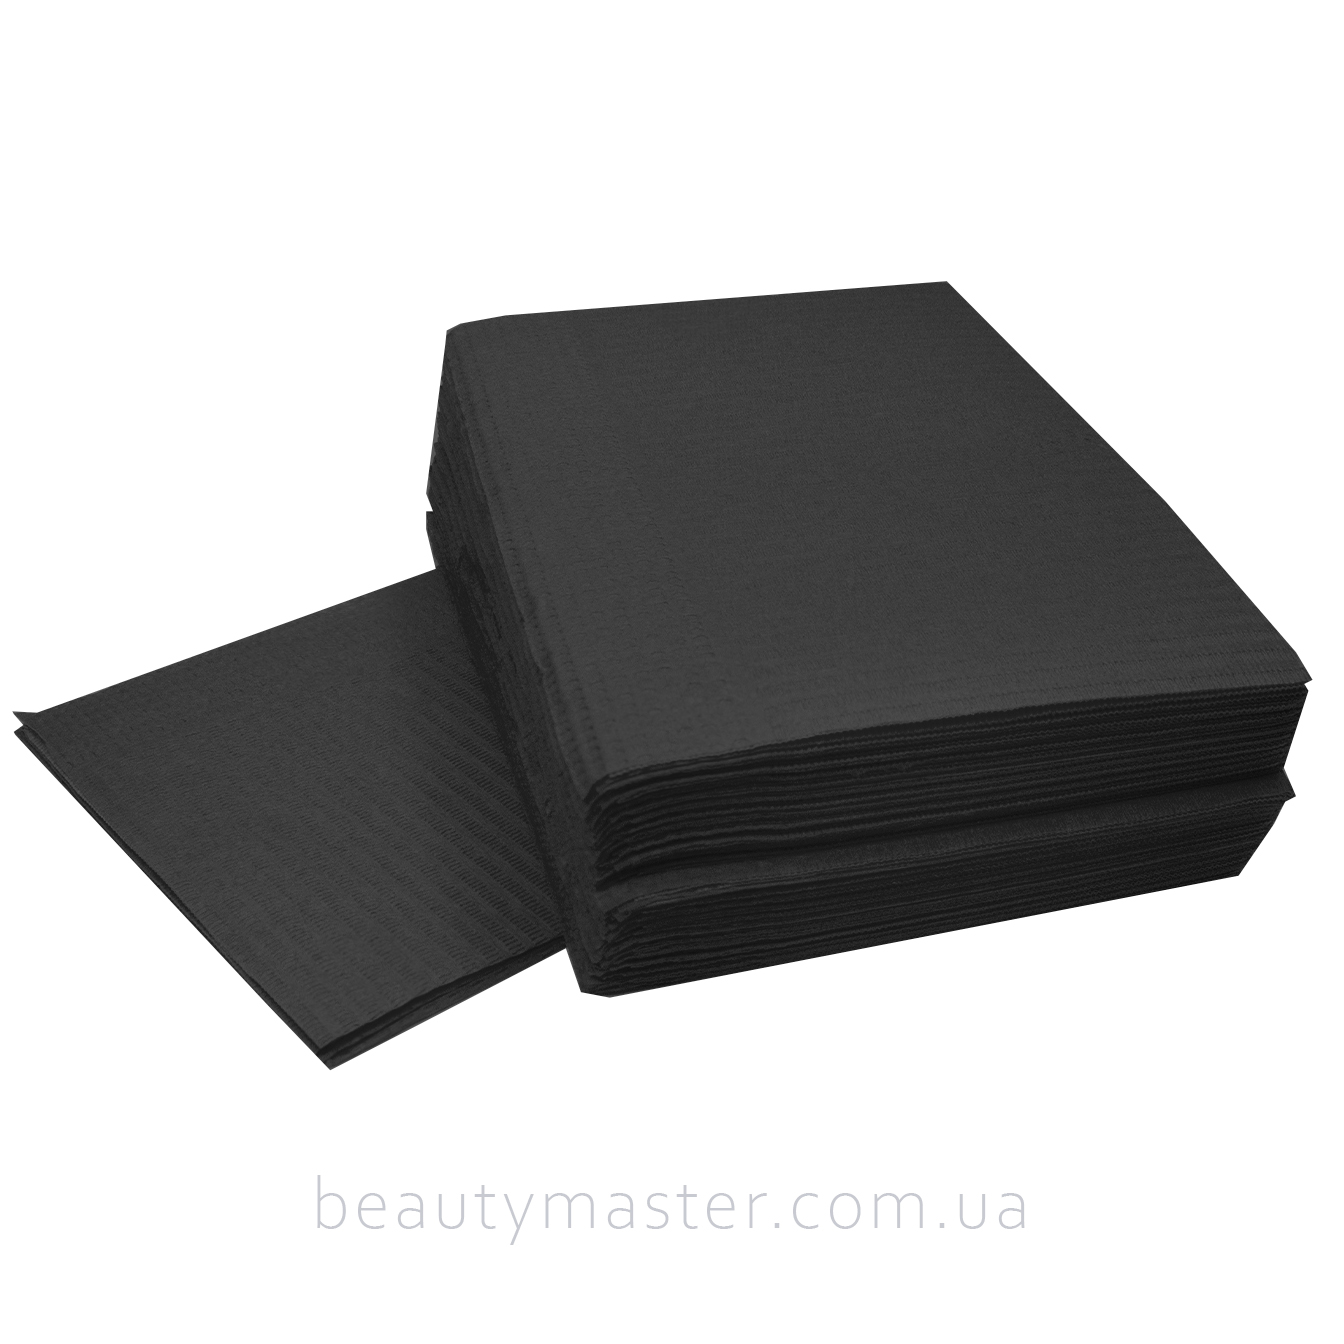 Салфетка непромокаемая черная (нагрудник, для стола) 45*32,5 комплект 25 шт